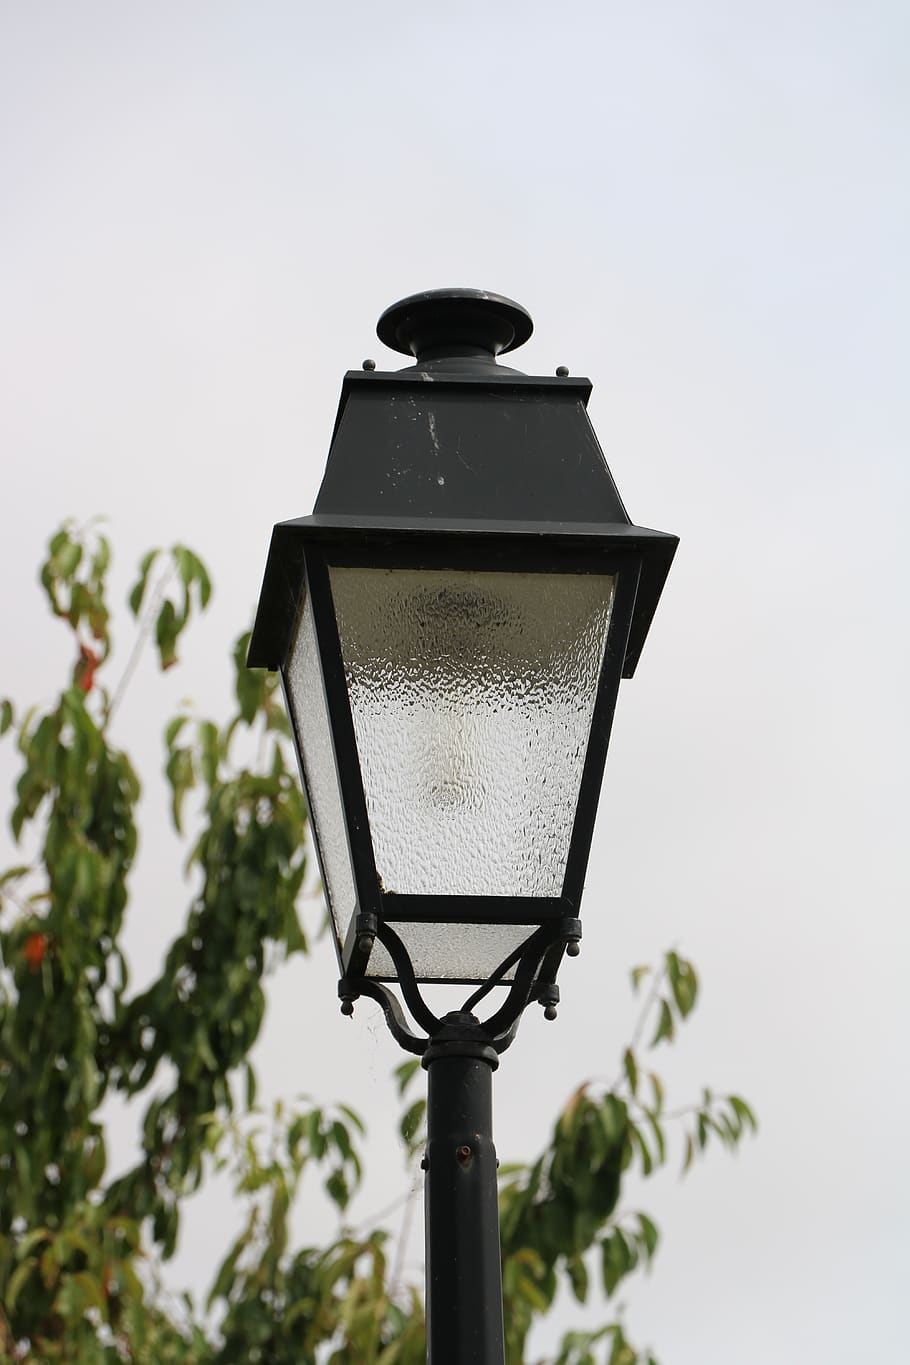 floor lamp, light, lantern, lighting, vintage, lamp, urban, old, lighting equipment, street light